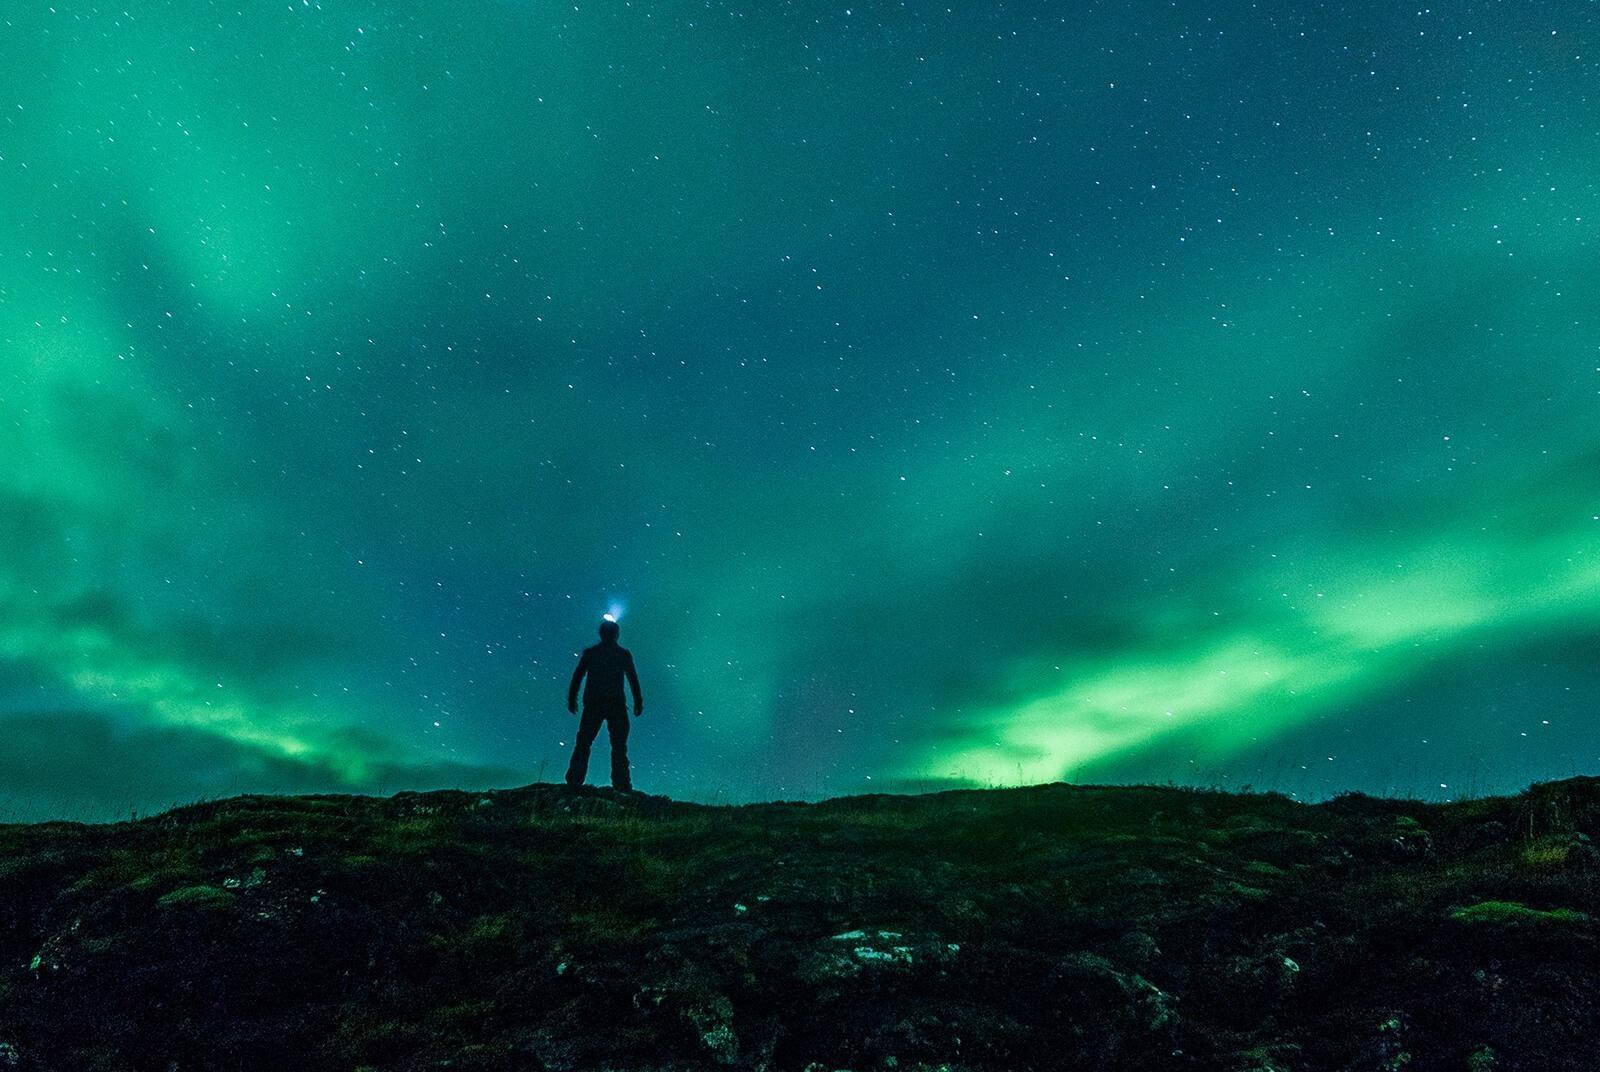 Vente a ver las auroras boreales durante la noche vieja en Islandia.